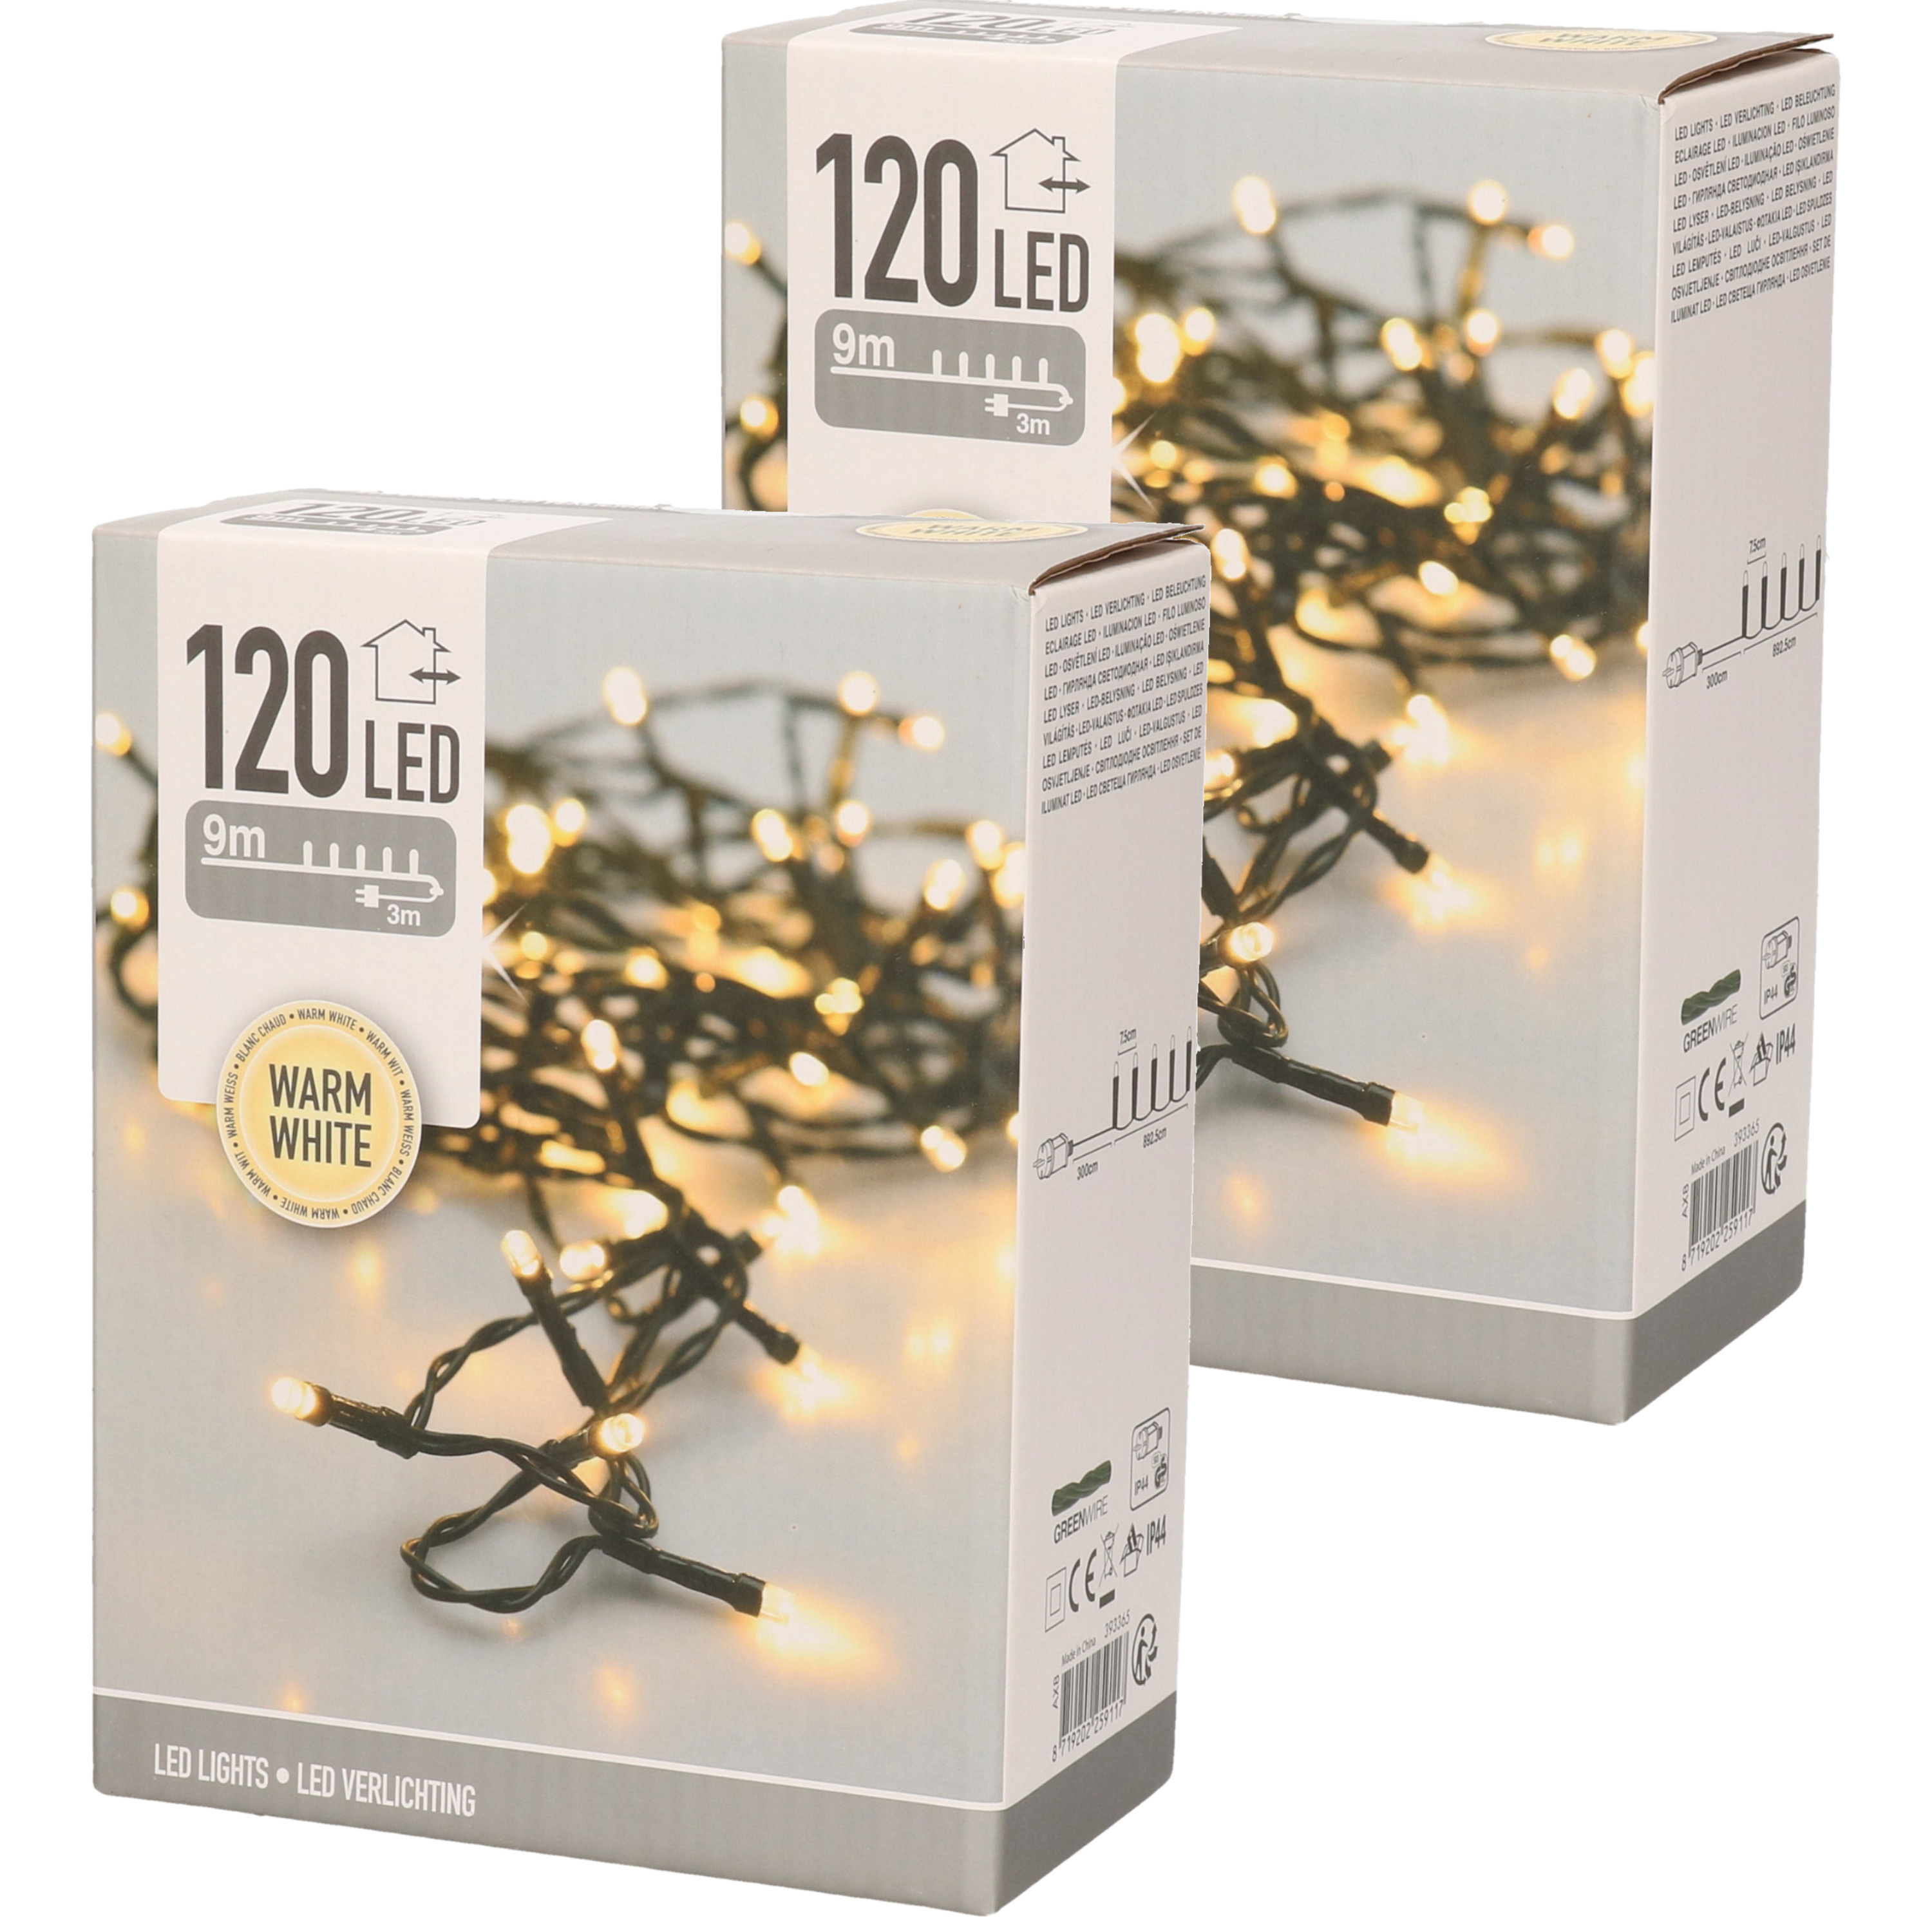 2x Kerstboomverlichting buiten 120 led-lampjes